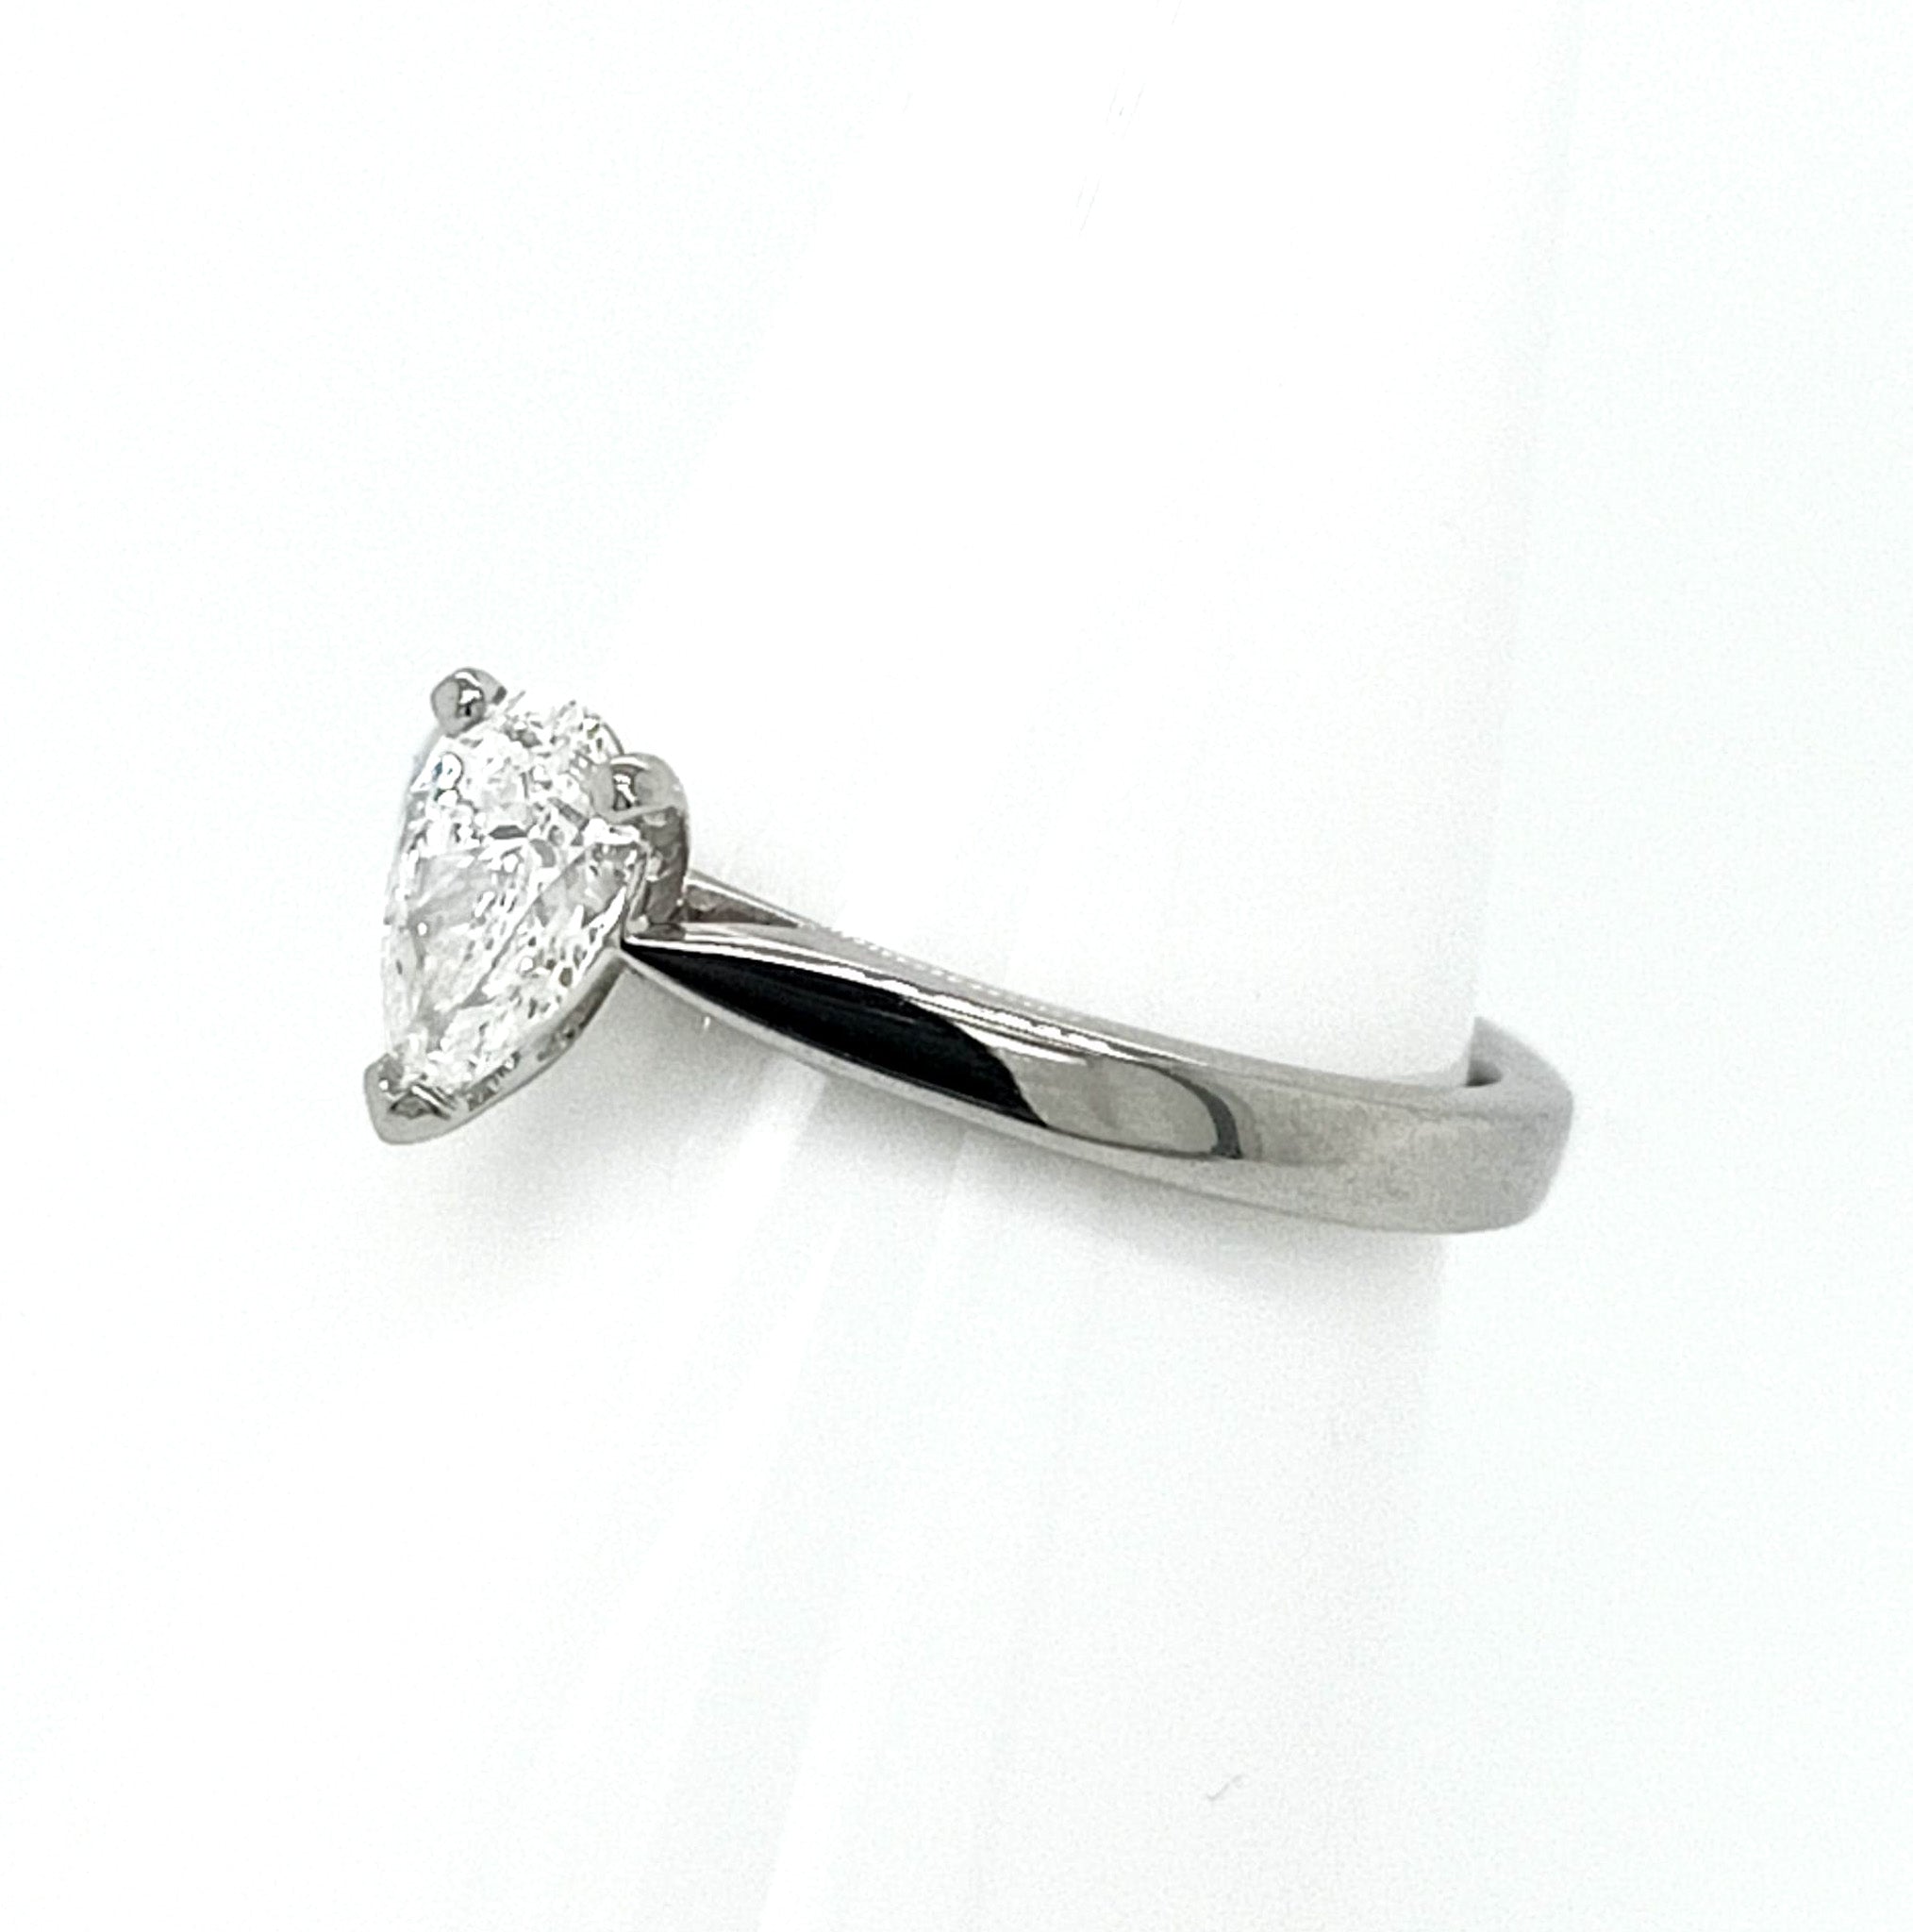 Platinum Pear Cut Solitaire Diamond Ring